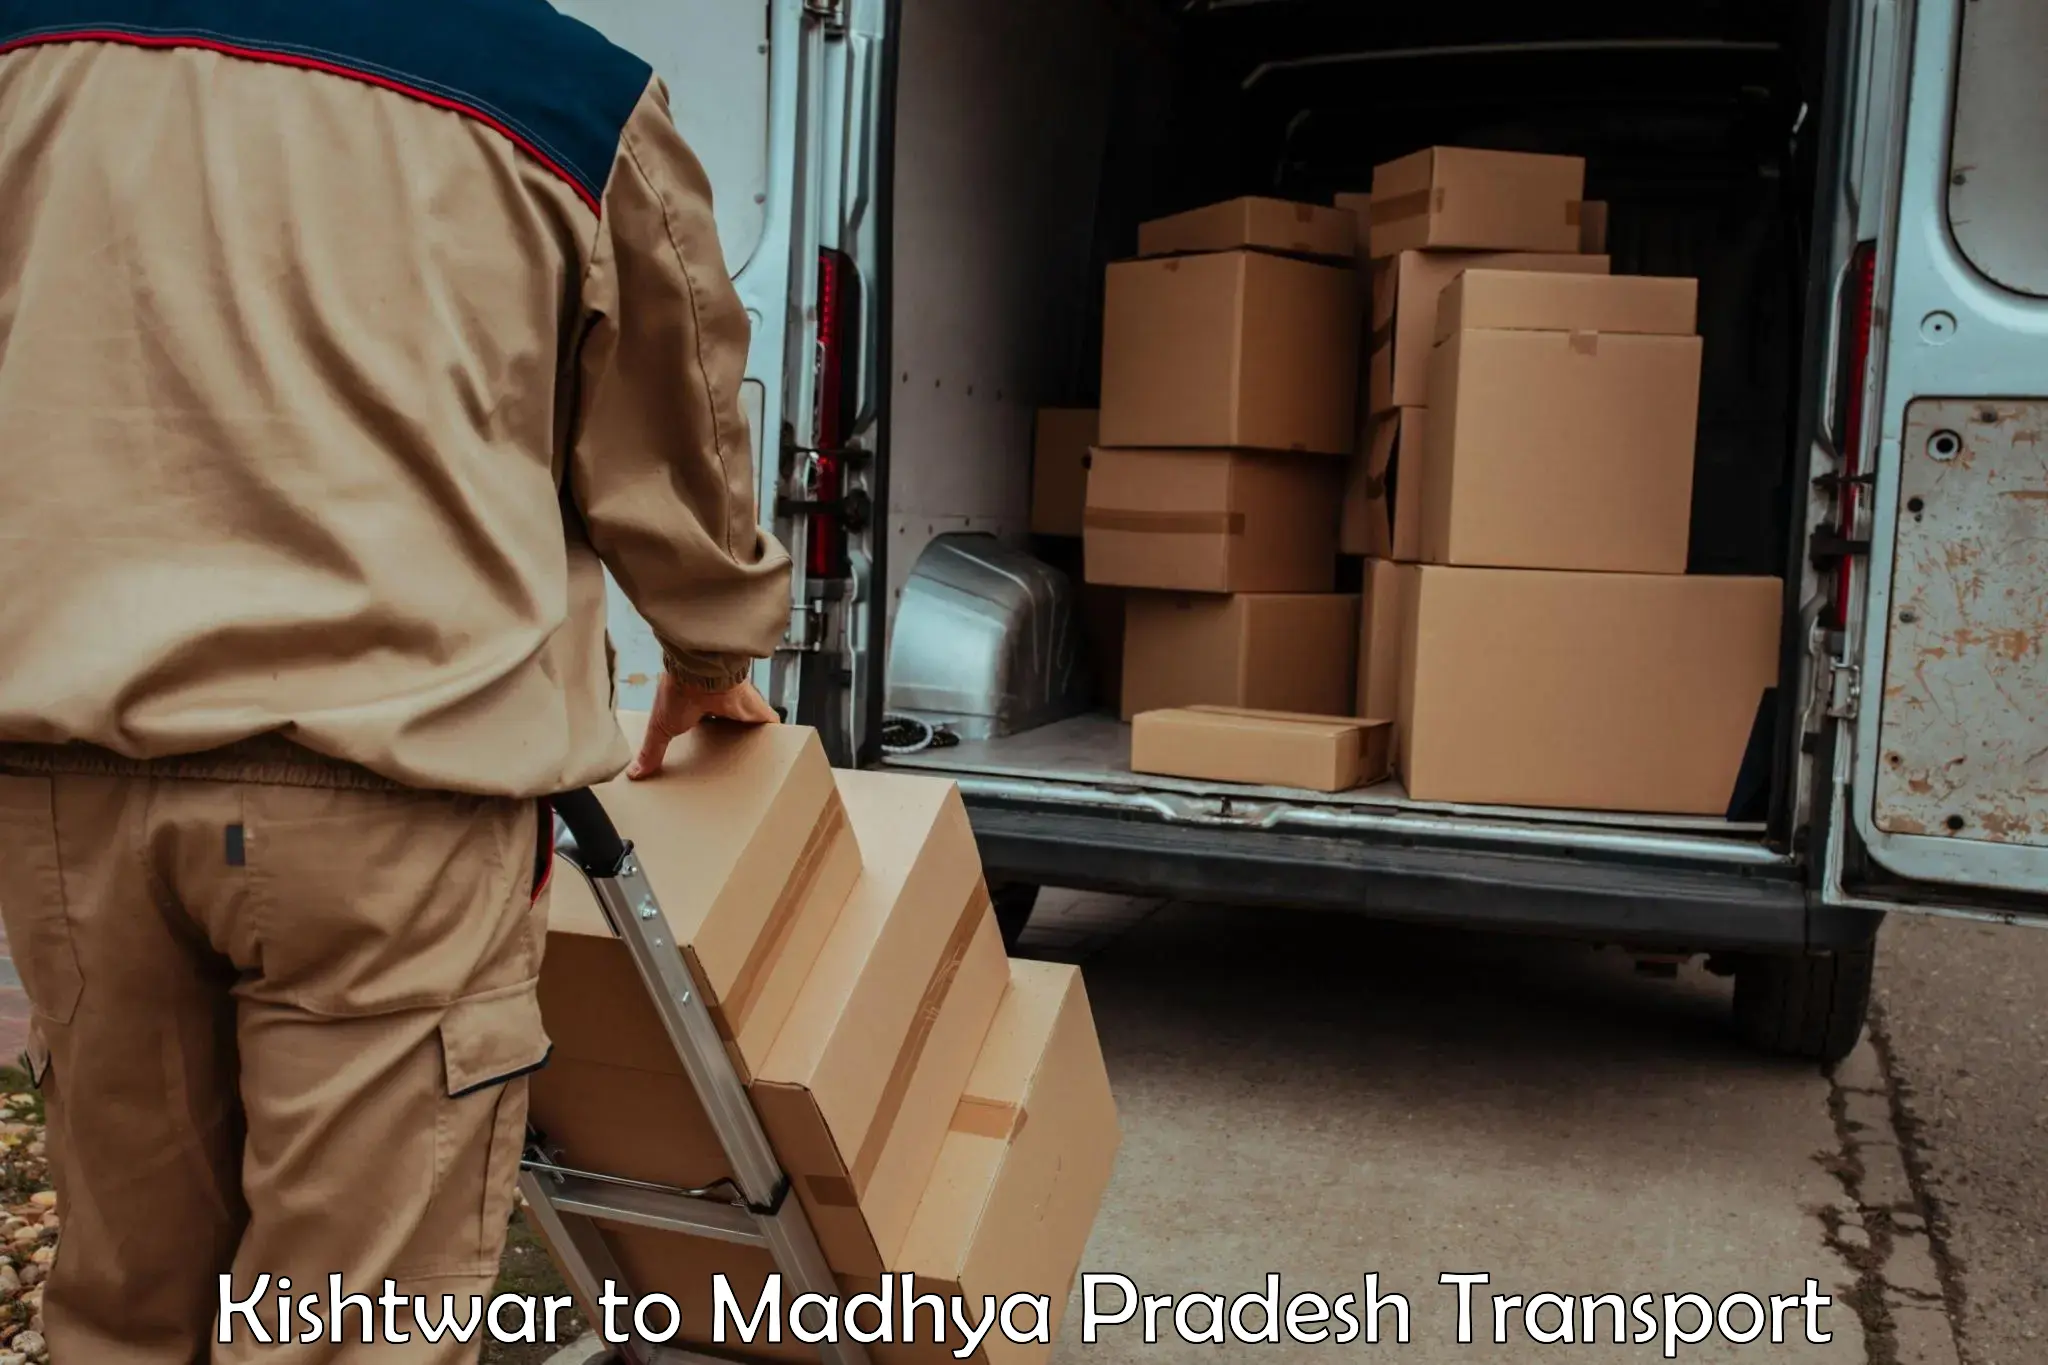 Furniture transport service Kishtwar to Rewa